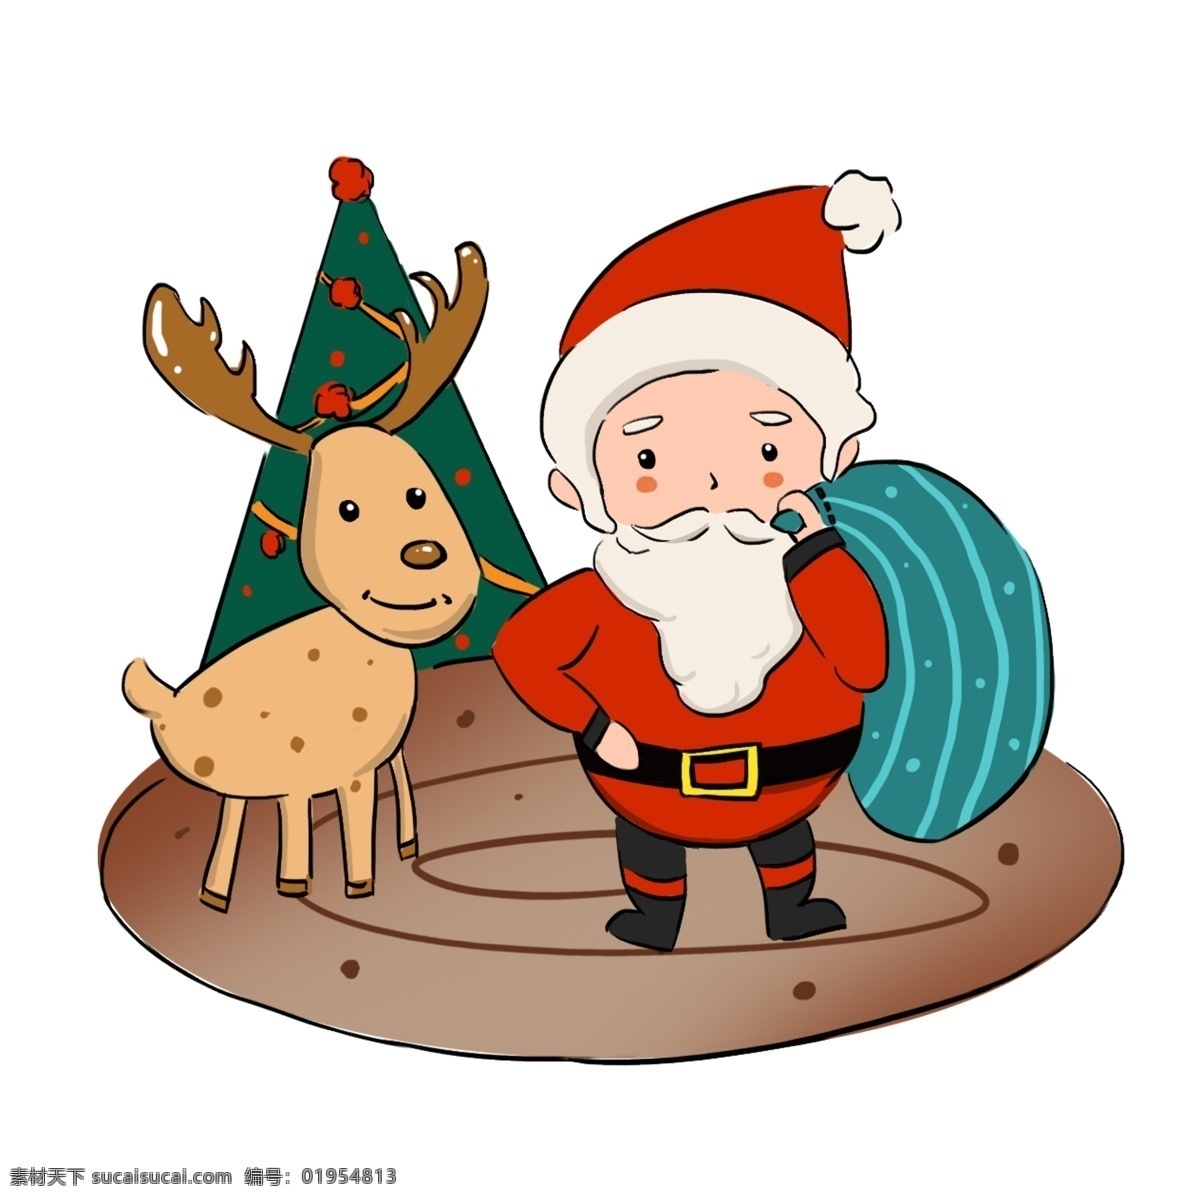 圣诞节 卡通 手绘 圣诞老人 圣诞快乐 手绘人物 圣诞树 圣诞 卡通手绘风 暖色调 西方传统节日